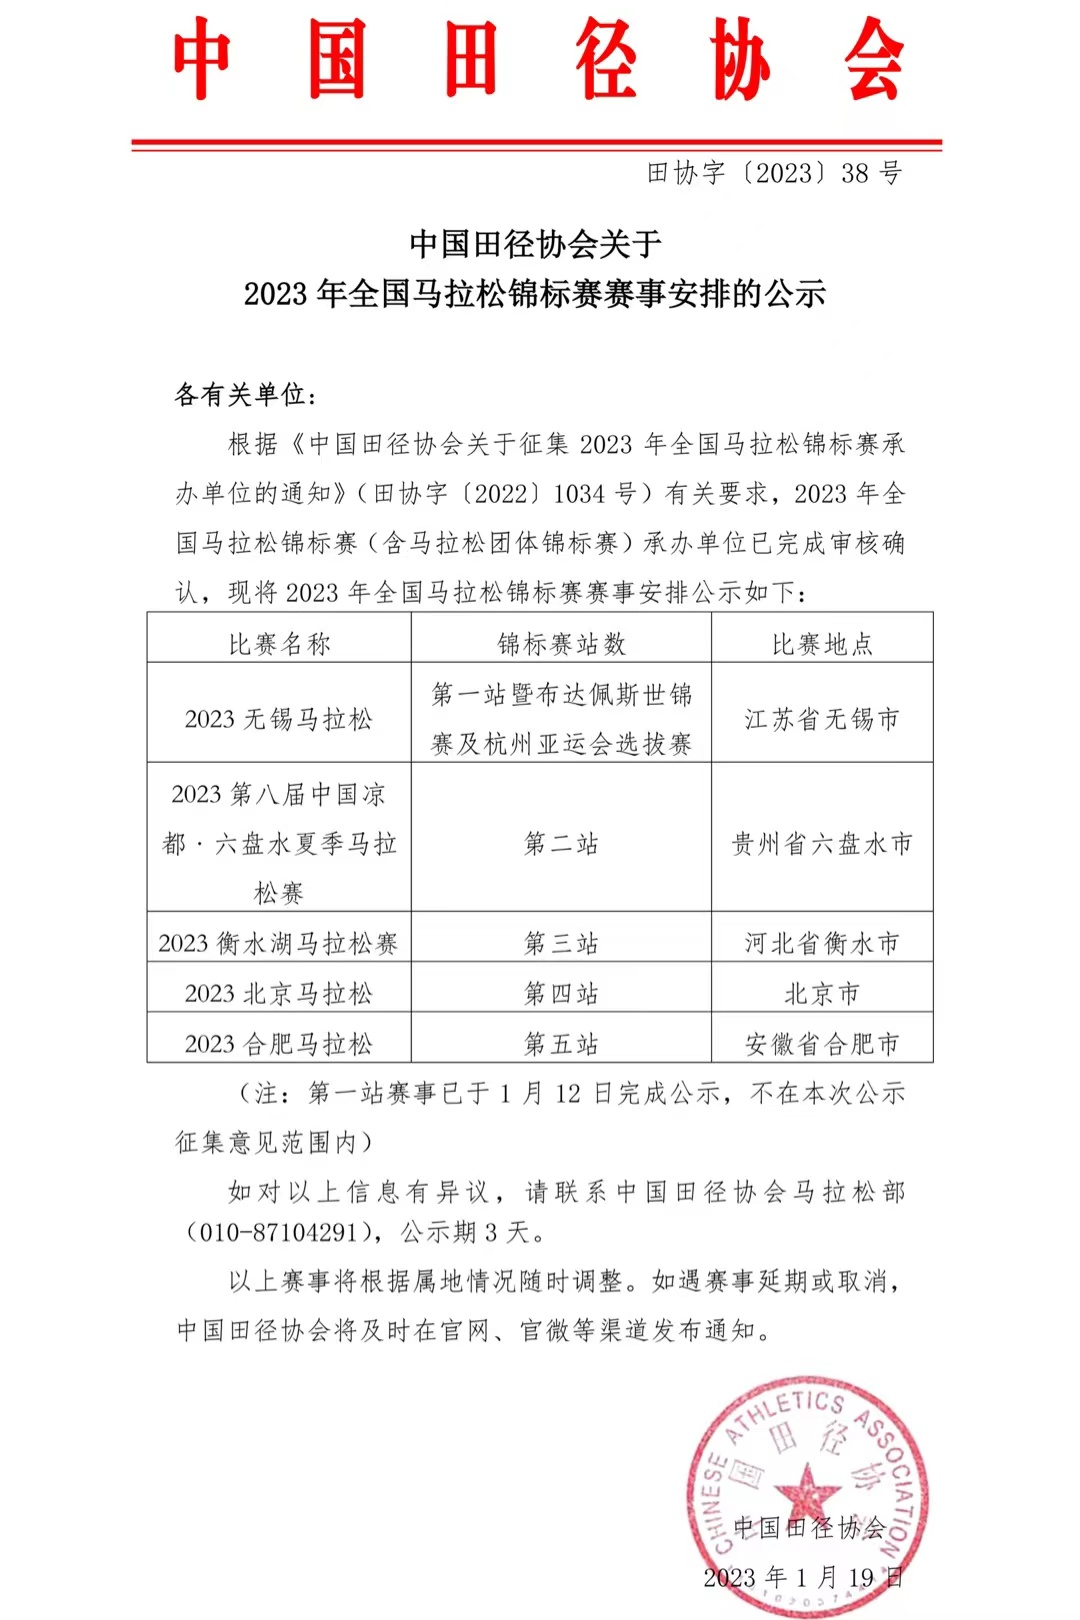 中国田径协会关于2023年全国马拉松锦标赛赛事安排的公示